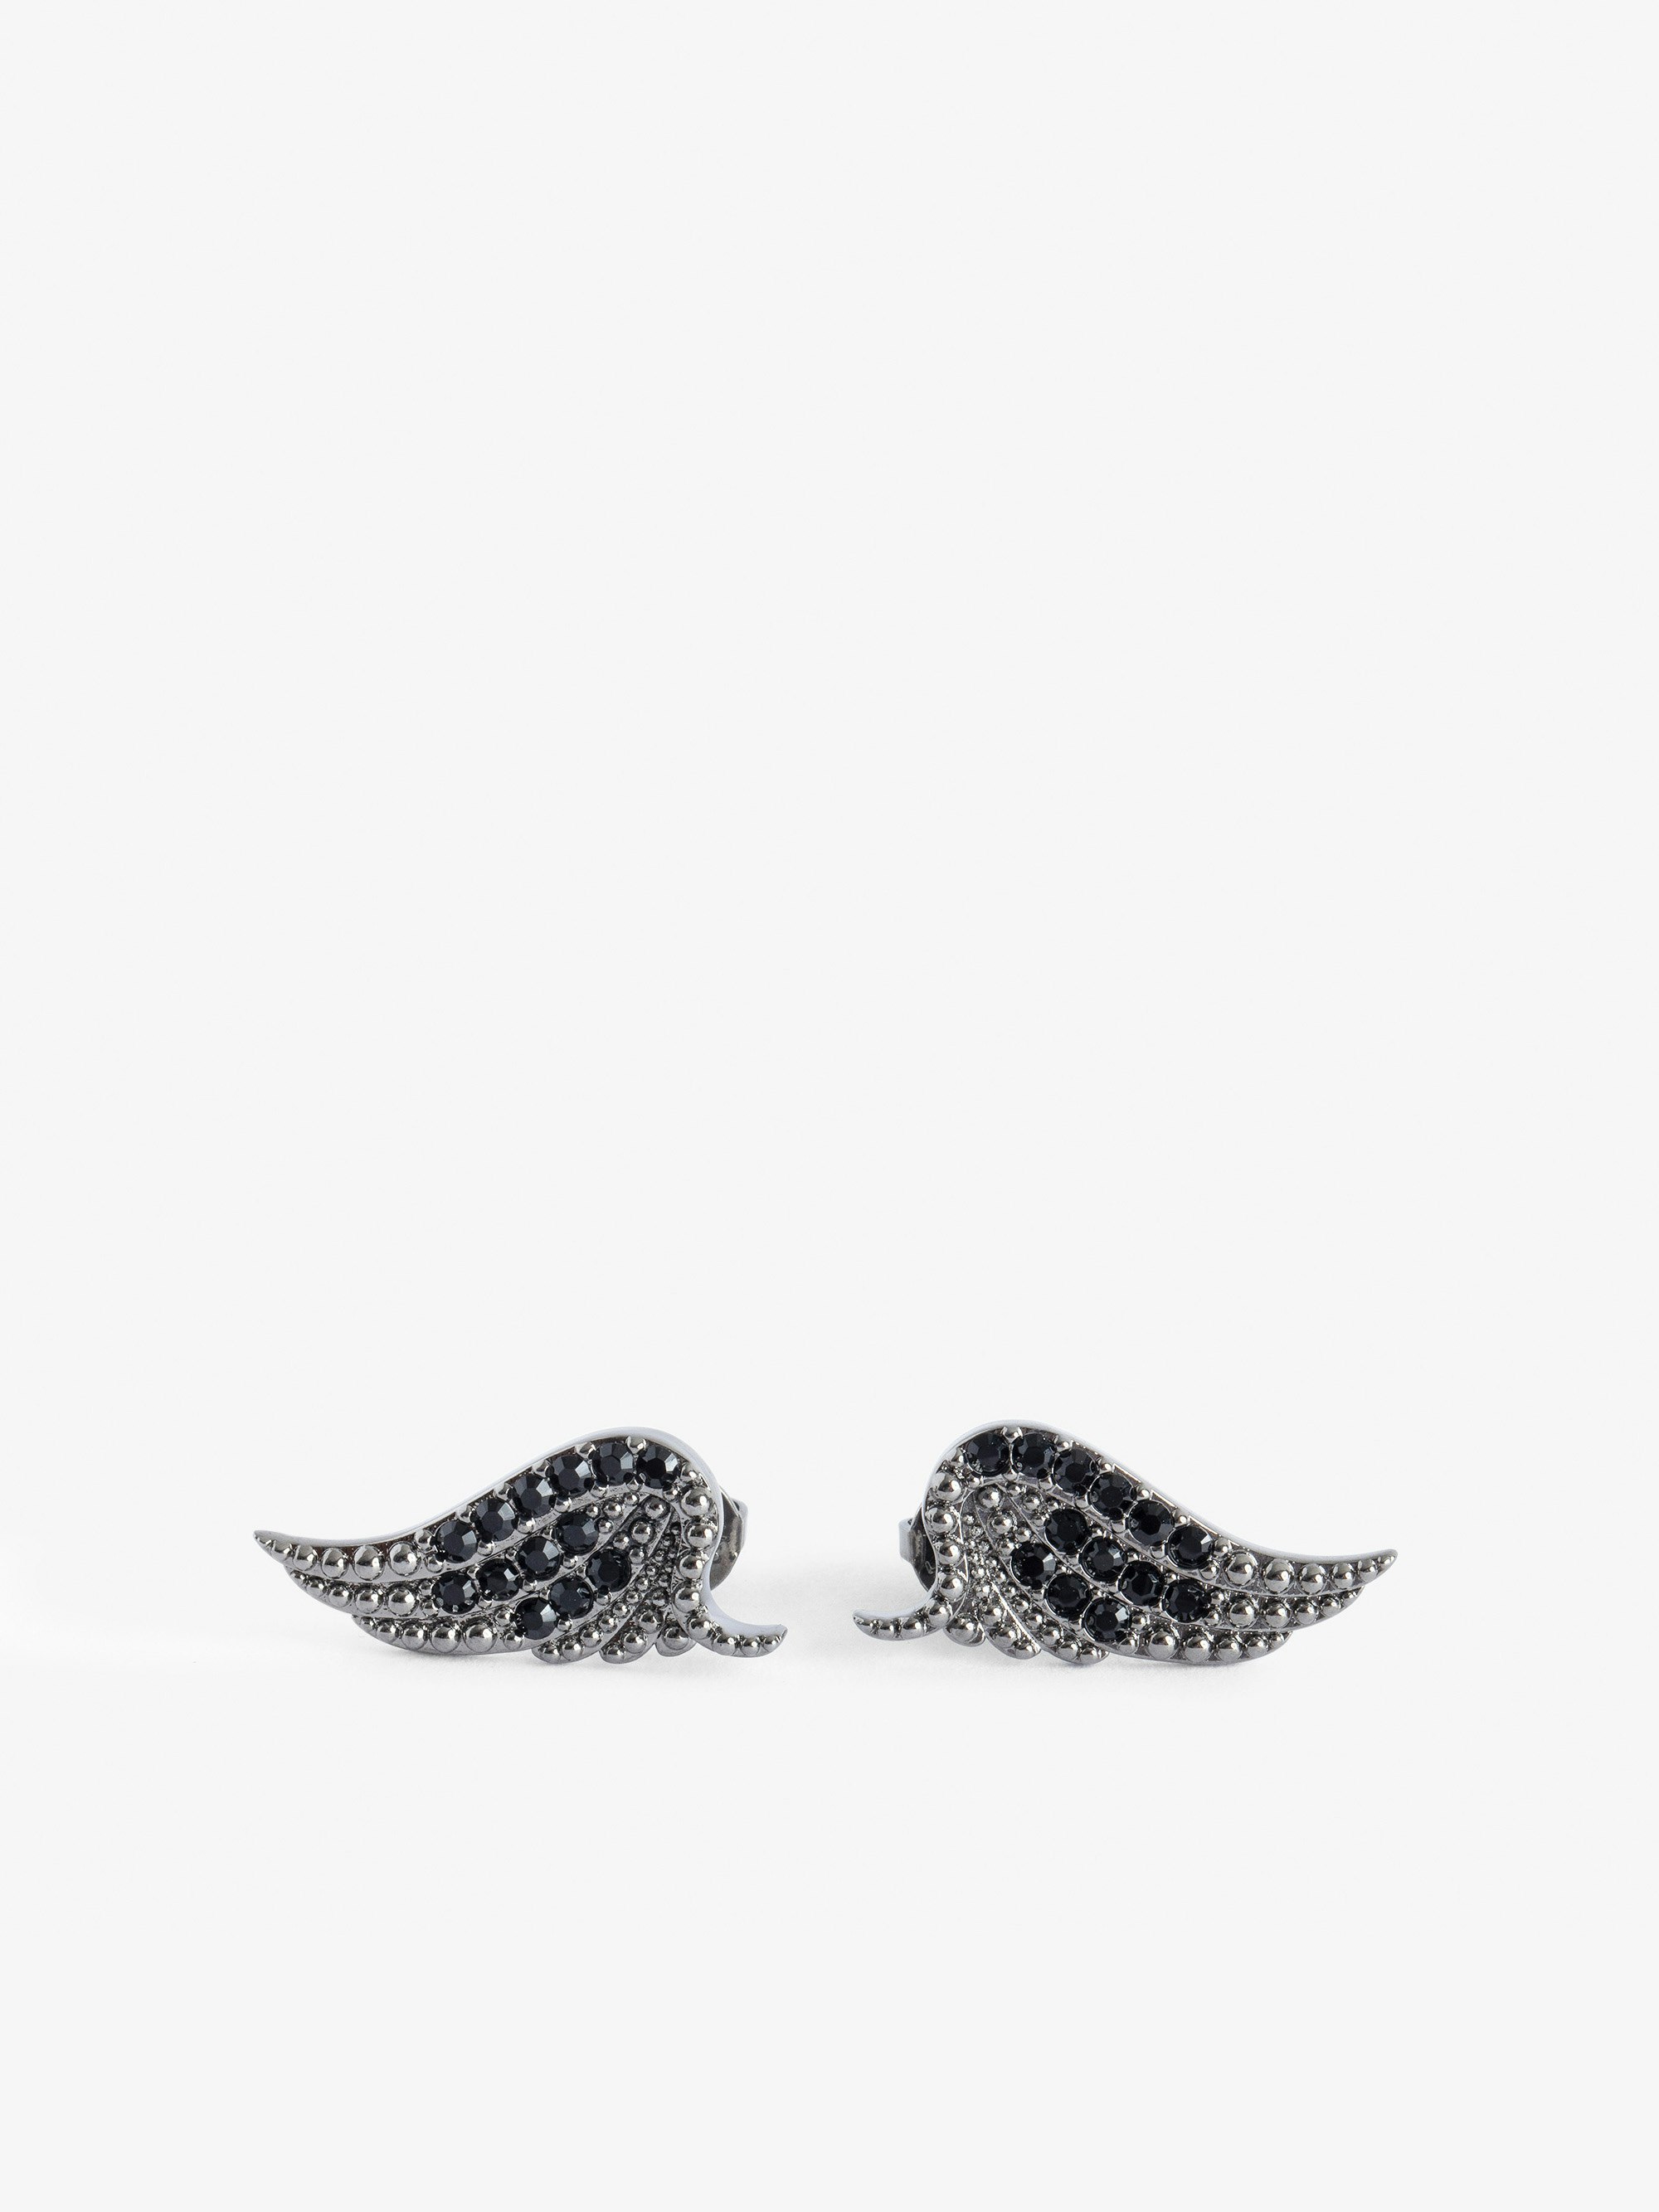 Ohrringe Rock - Ohrringe mit Strass Flügeln aus Messing.